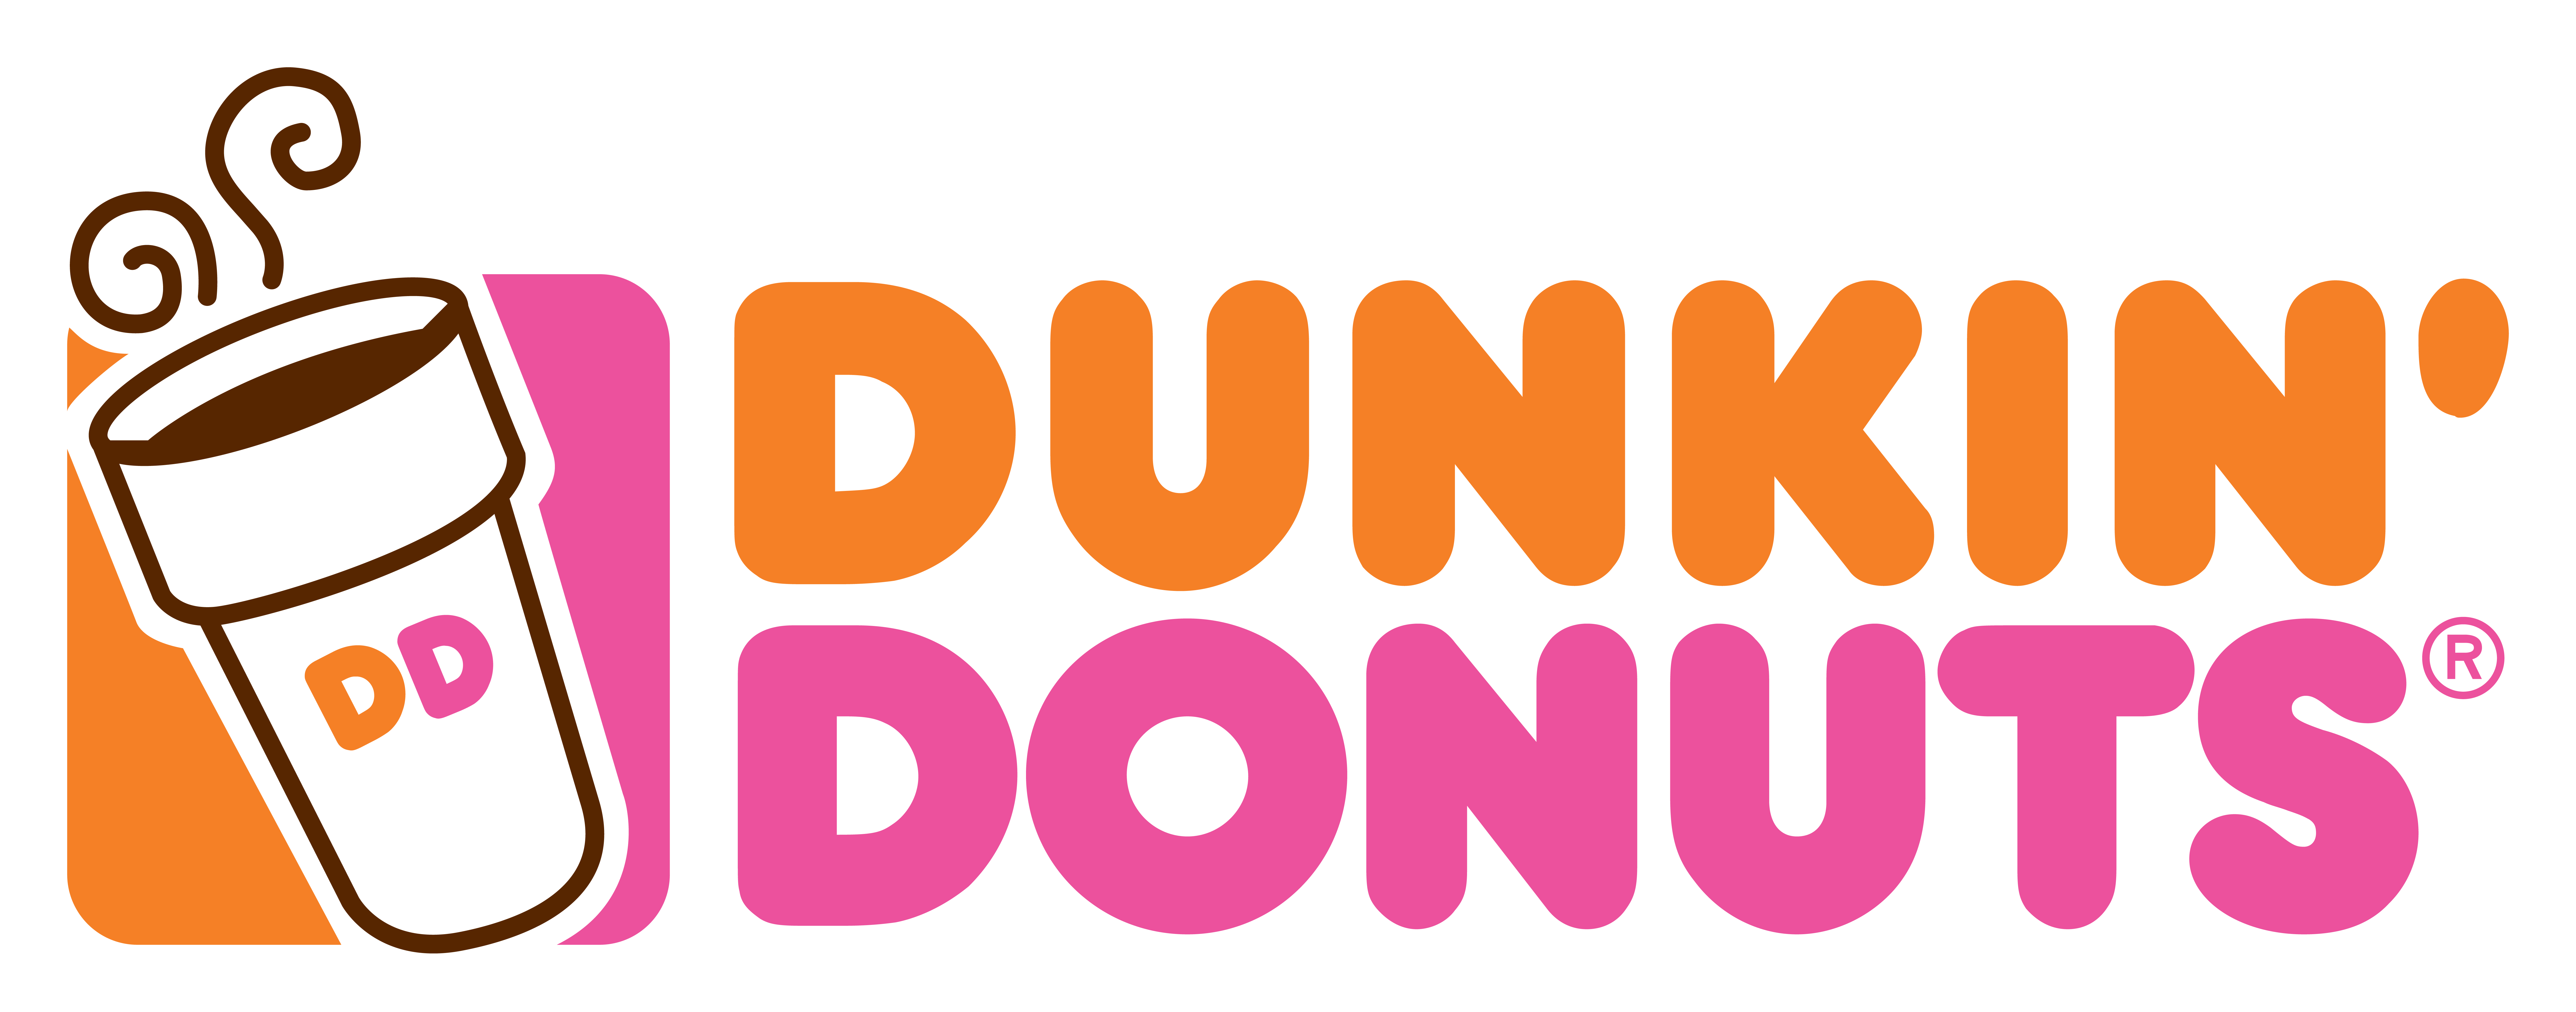 doughnut clipart donut wallpaper